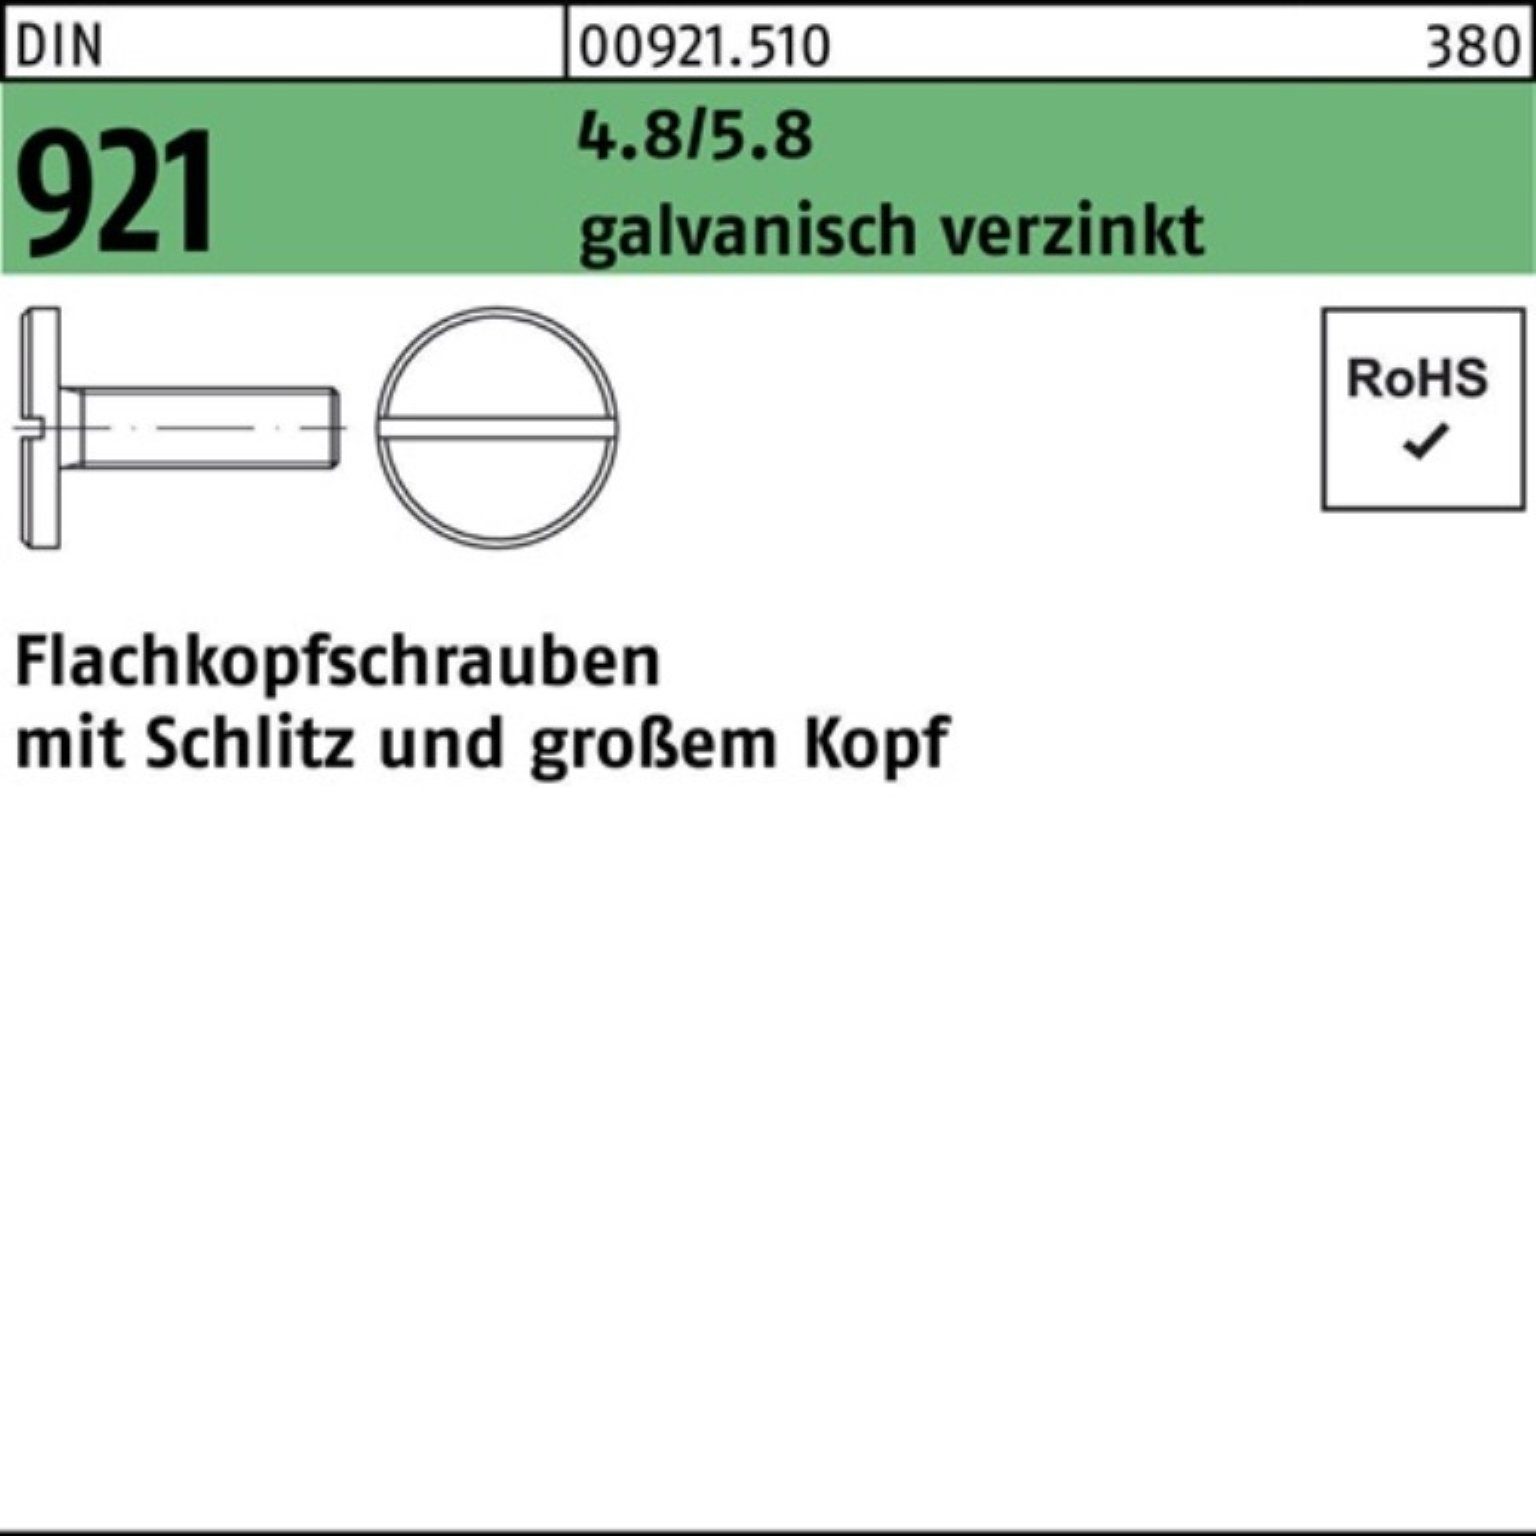 4.8/5.8 100er galv.verz Flachkopfschraube 16 Schlitz M10x Reyher Schraube 921 DIN Pack